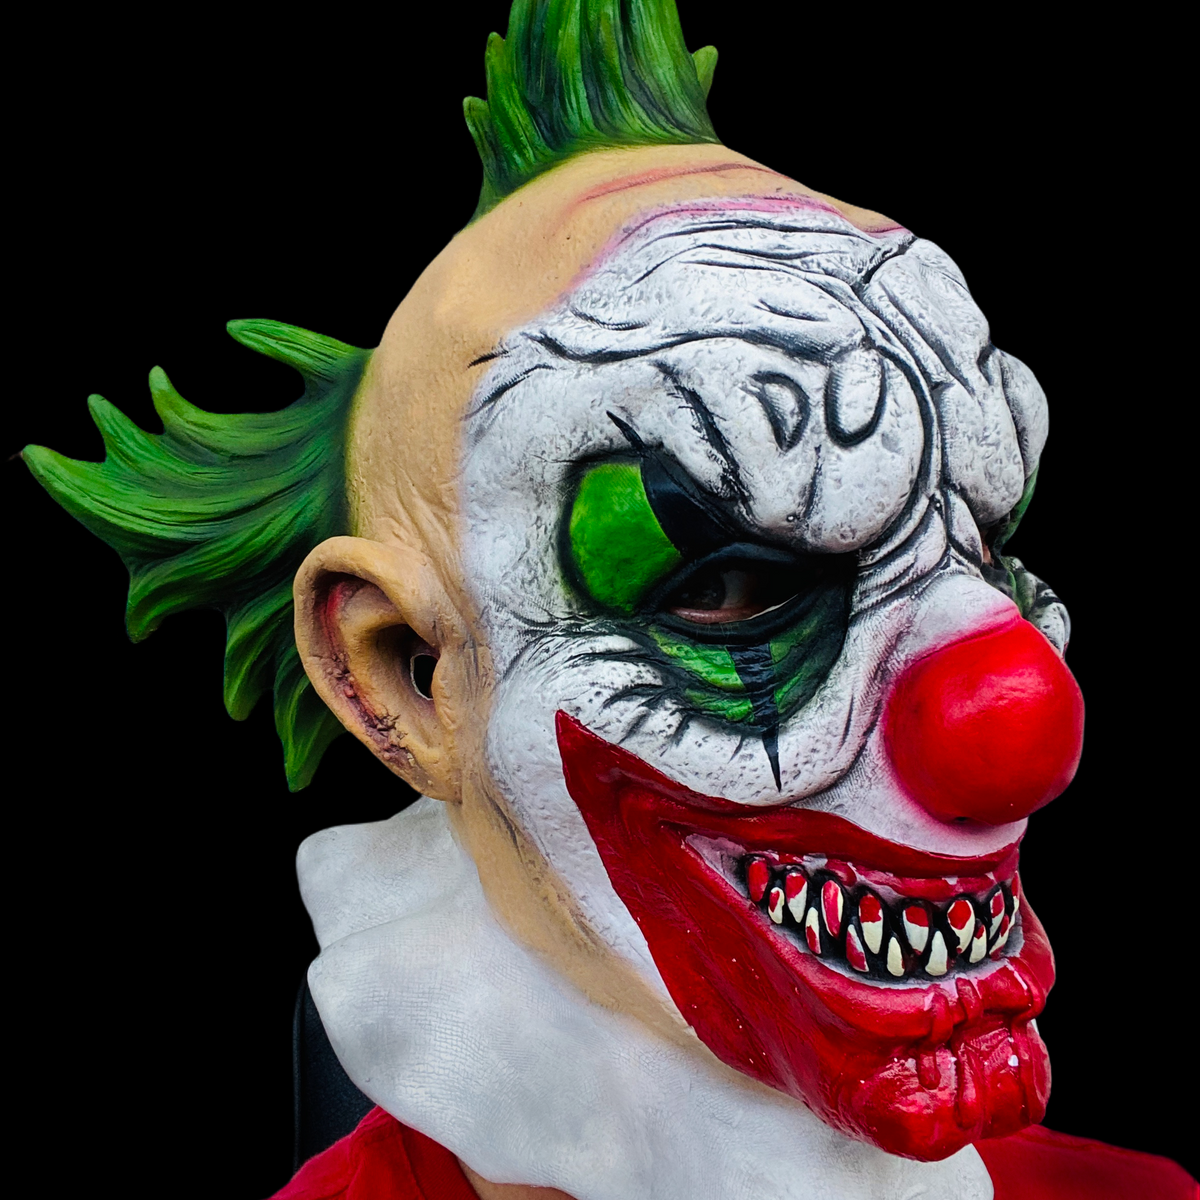 Masque de clown de carnaval maléfique